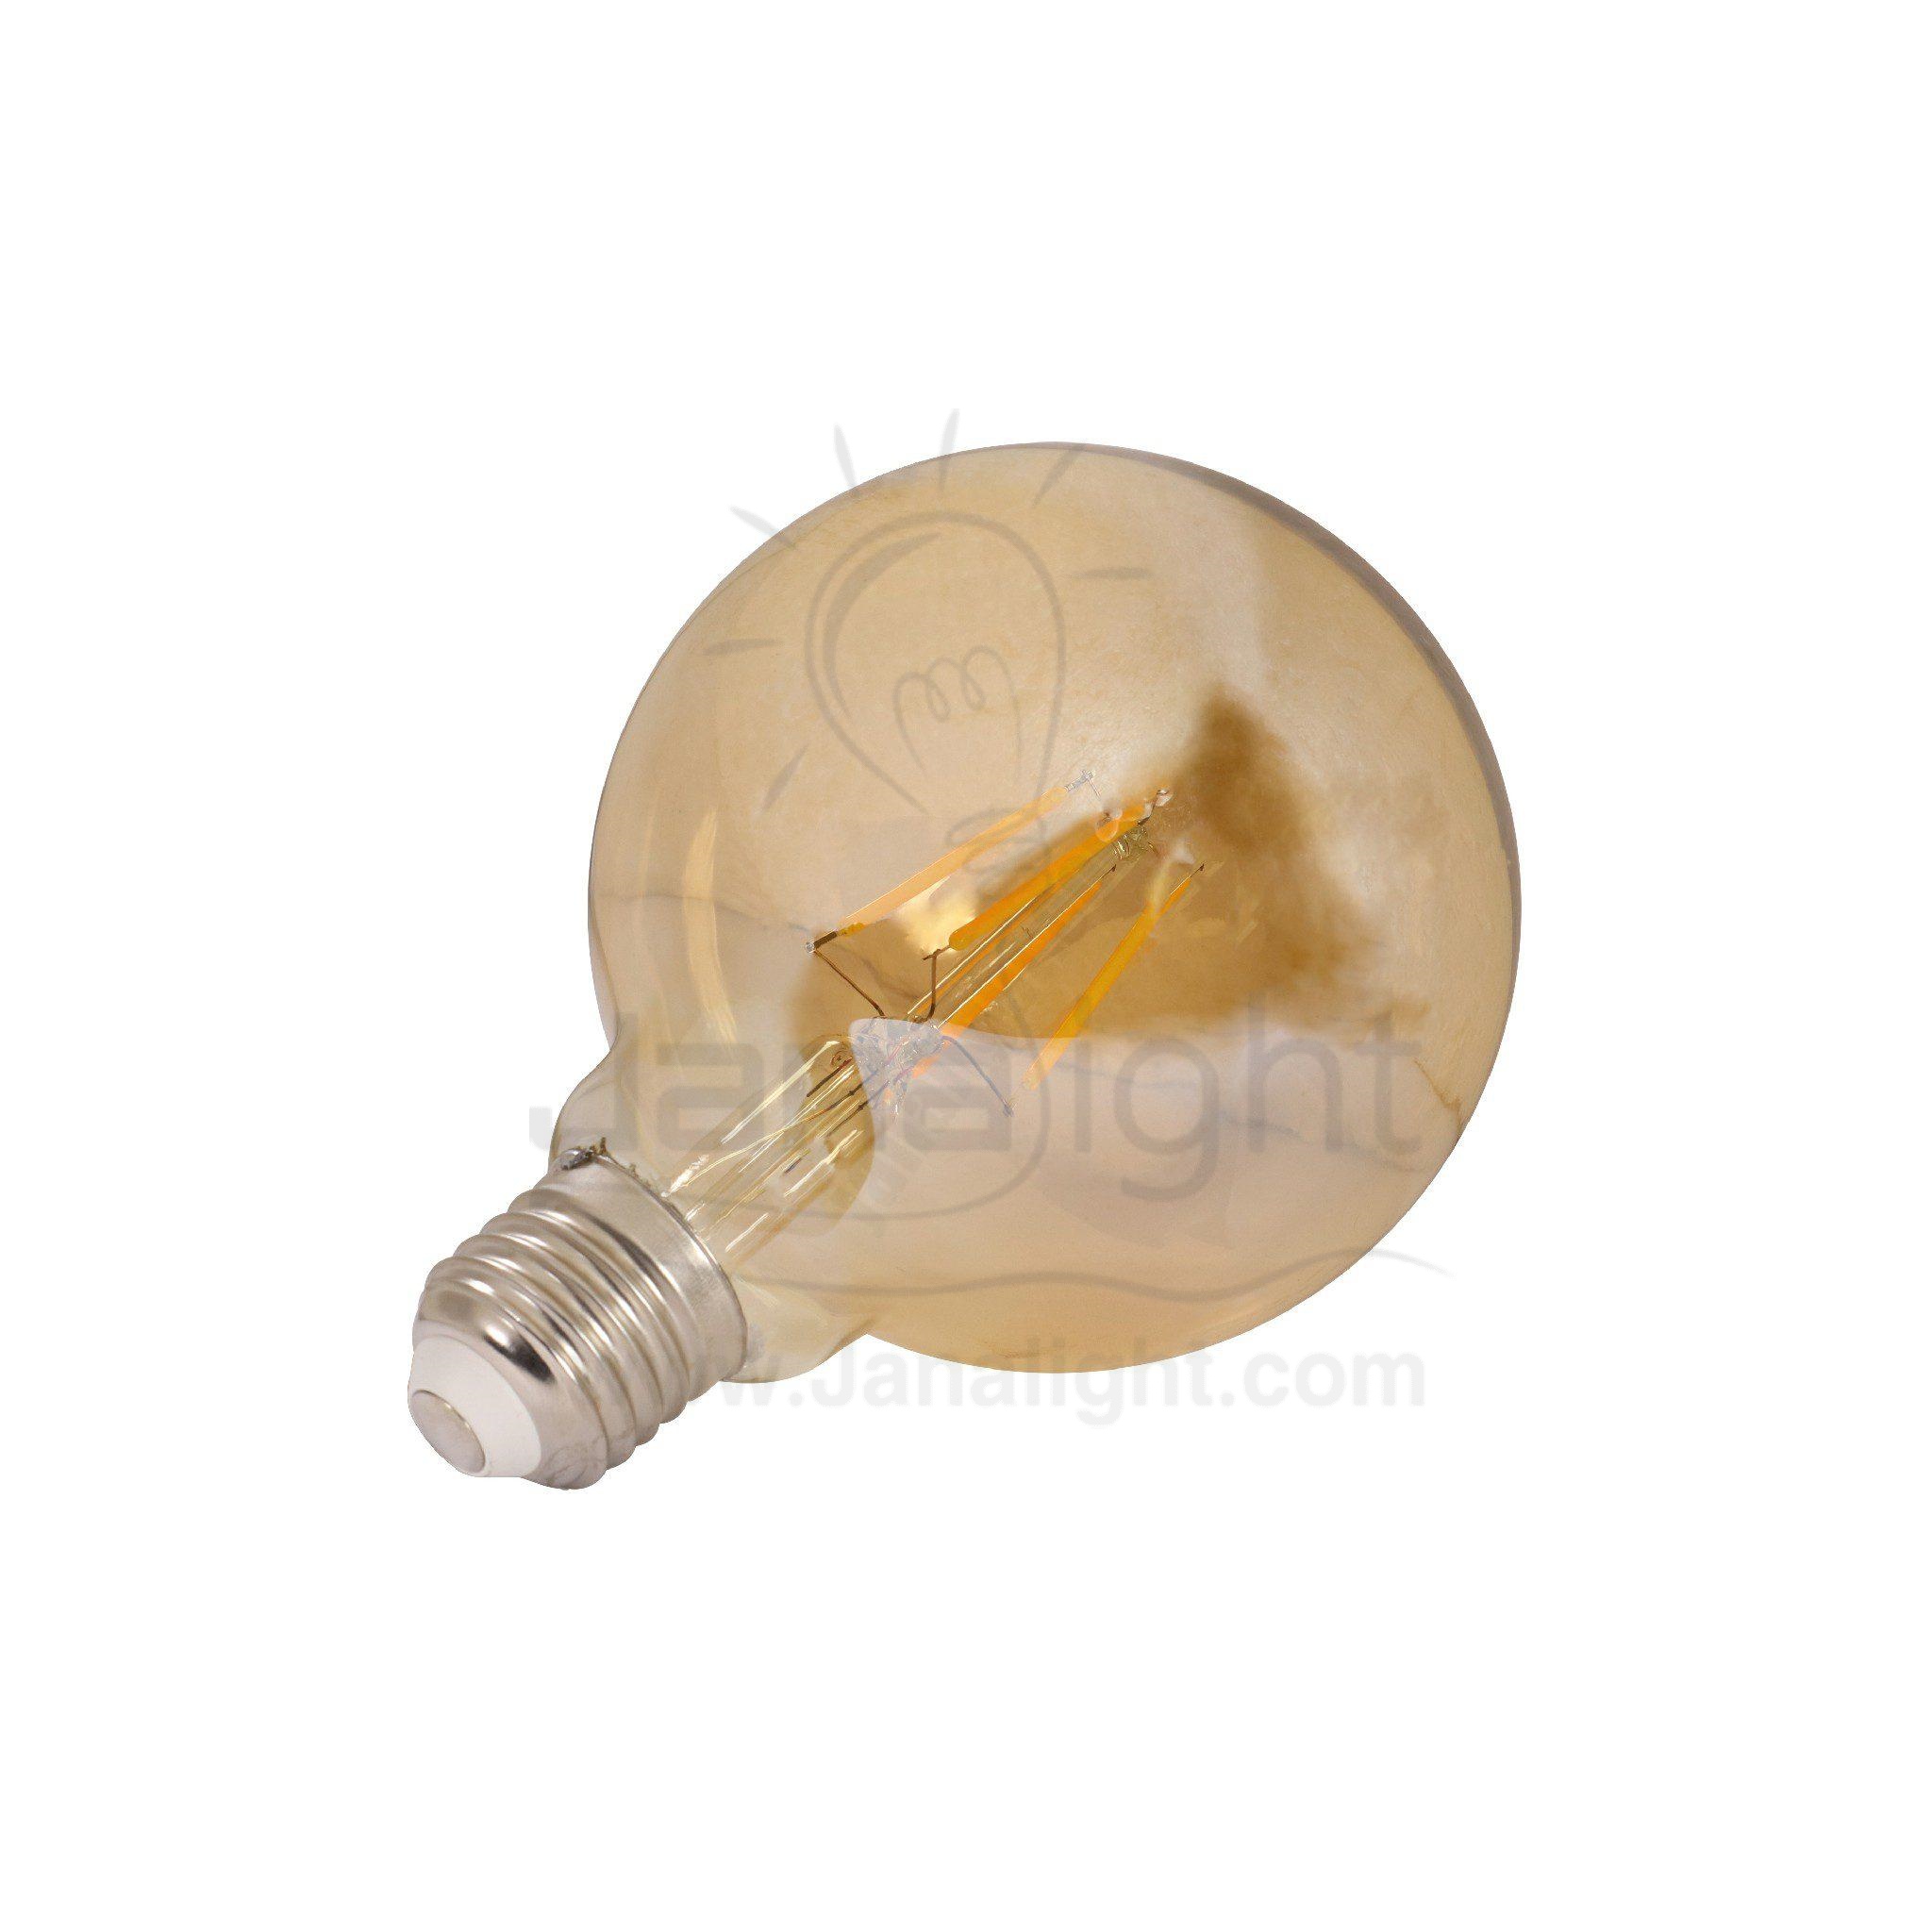 لمبة 6 وات كورة فلامنت اديسون G95 LED Filament Bulb 6 watt